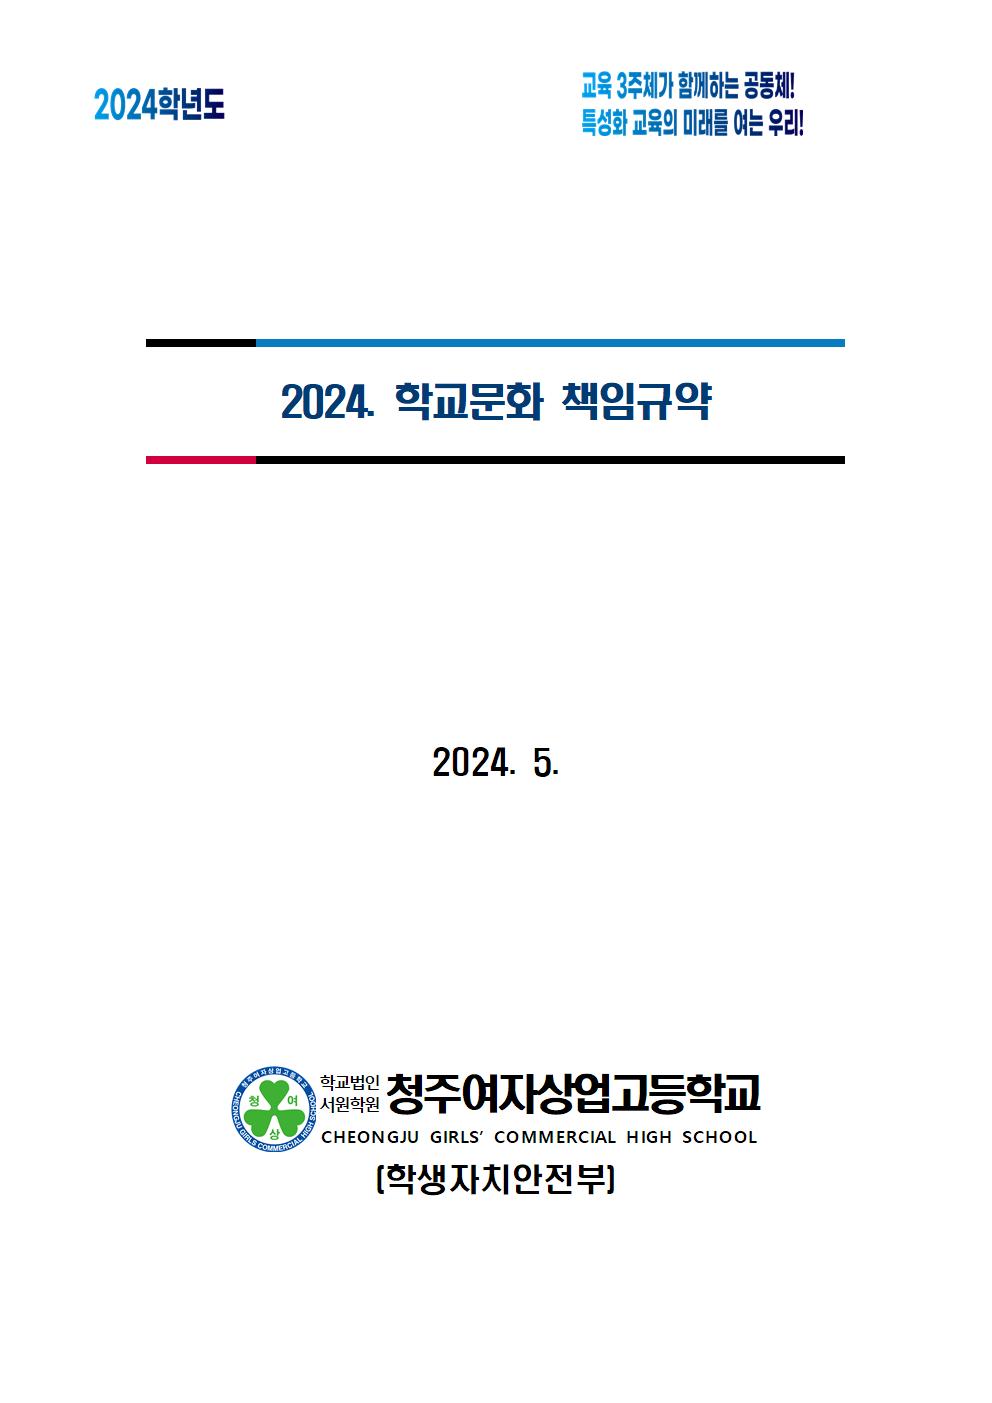 2024. 학교문화 책임규약(1)001